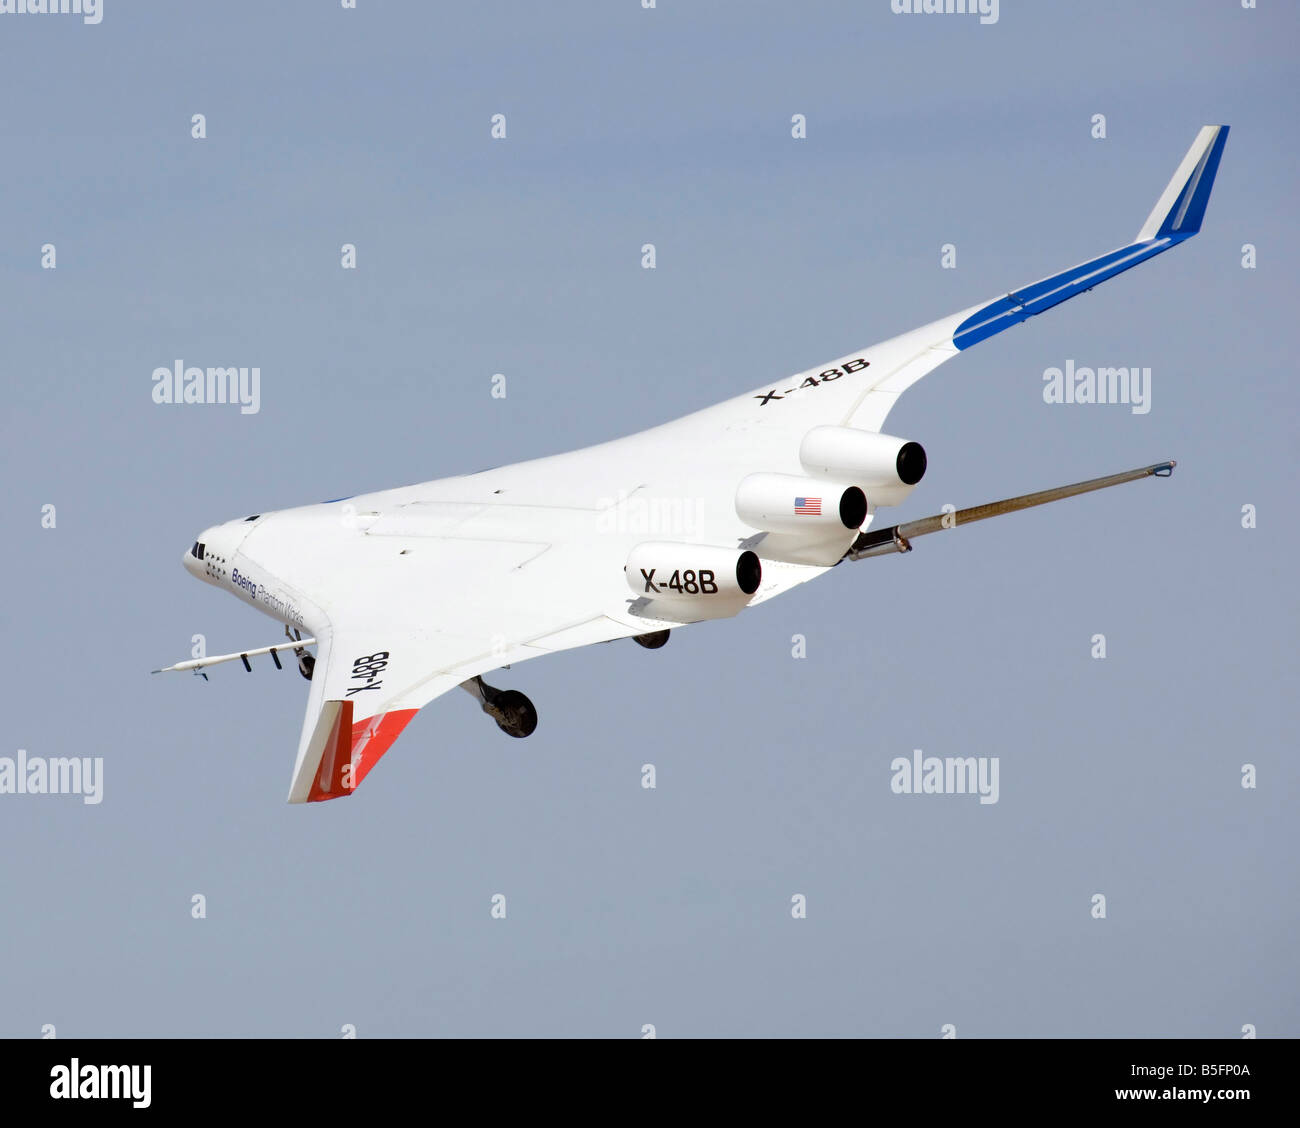 4 aprile 2008 - L'X-48B blended wing Body research banche degli aeromobili in modo intelligente in questo blocco 2 fase di volo immagine Foto Stock